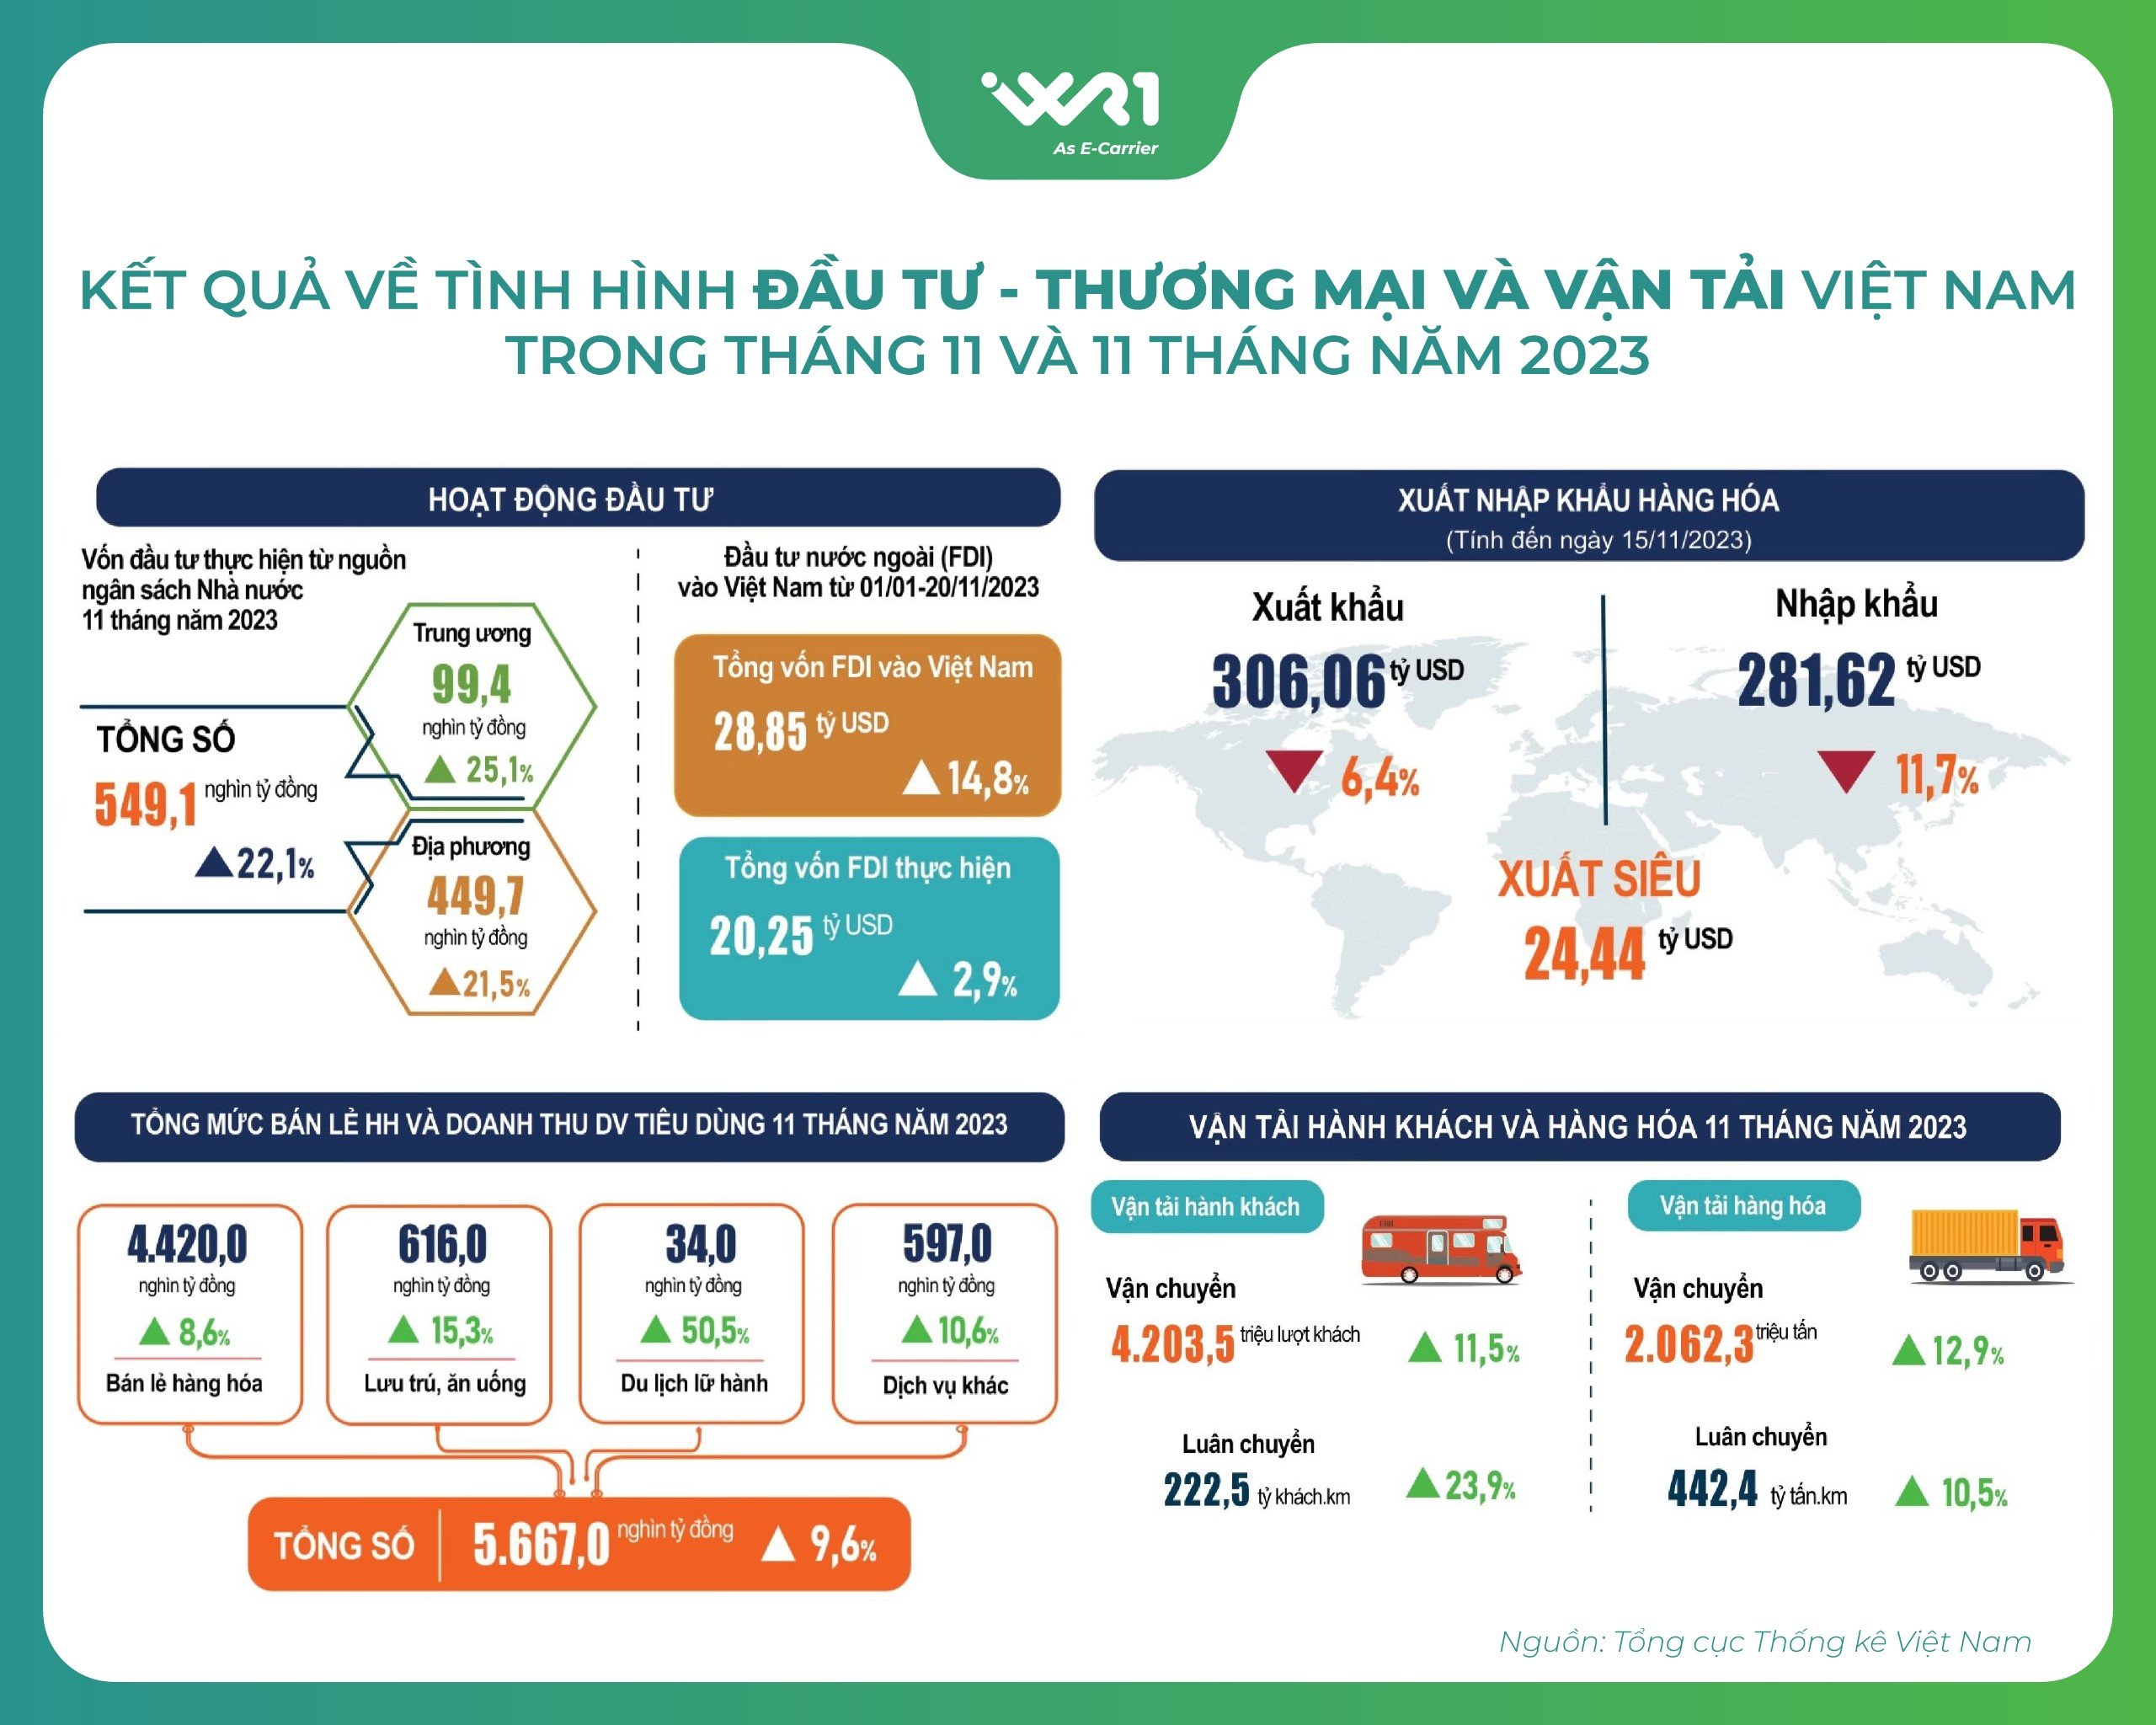 Kết quả về tình hình Đầu tư - Thương mại và Vận tải Việt Nam trong tháng 11 và trong 11 tháng năm 2023